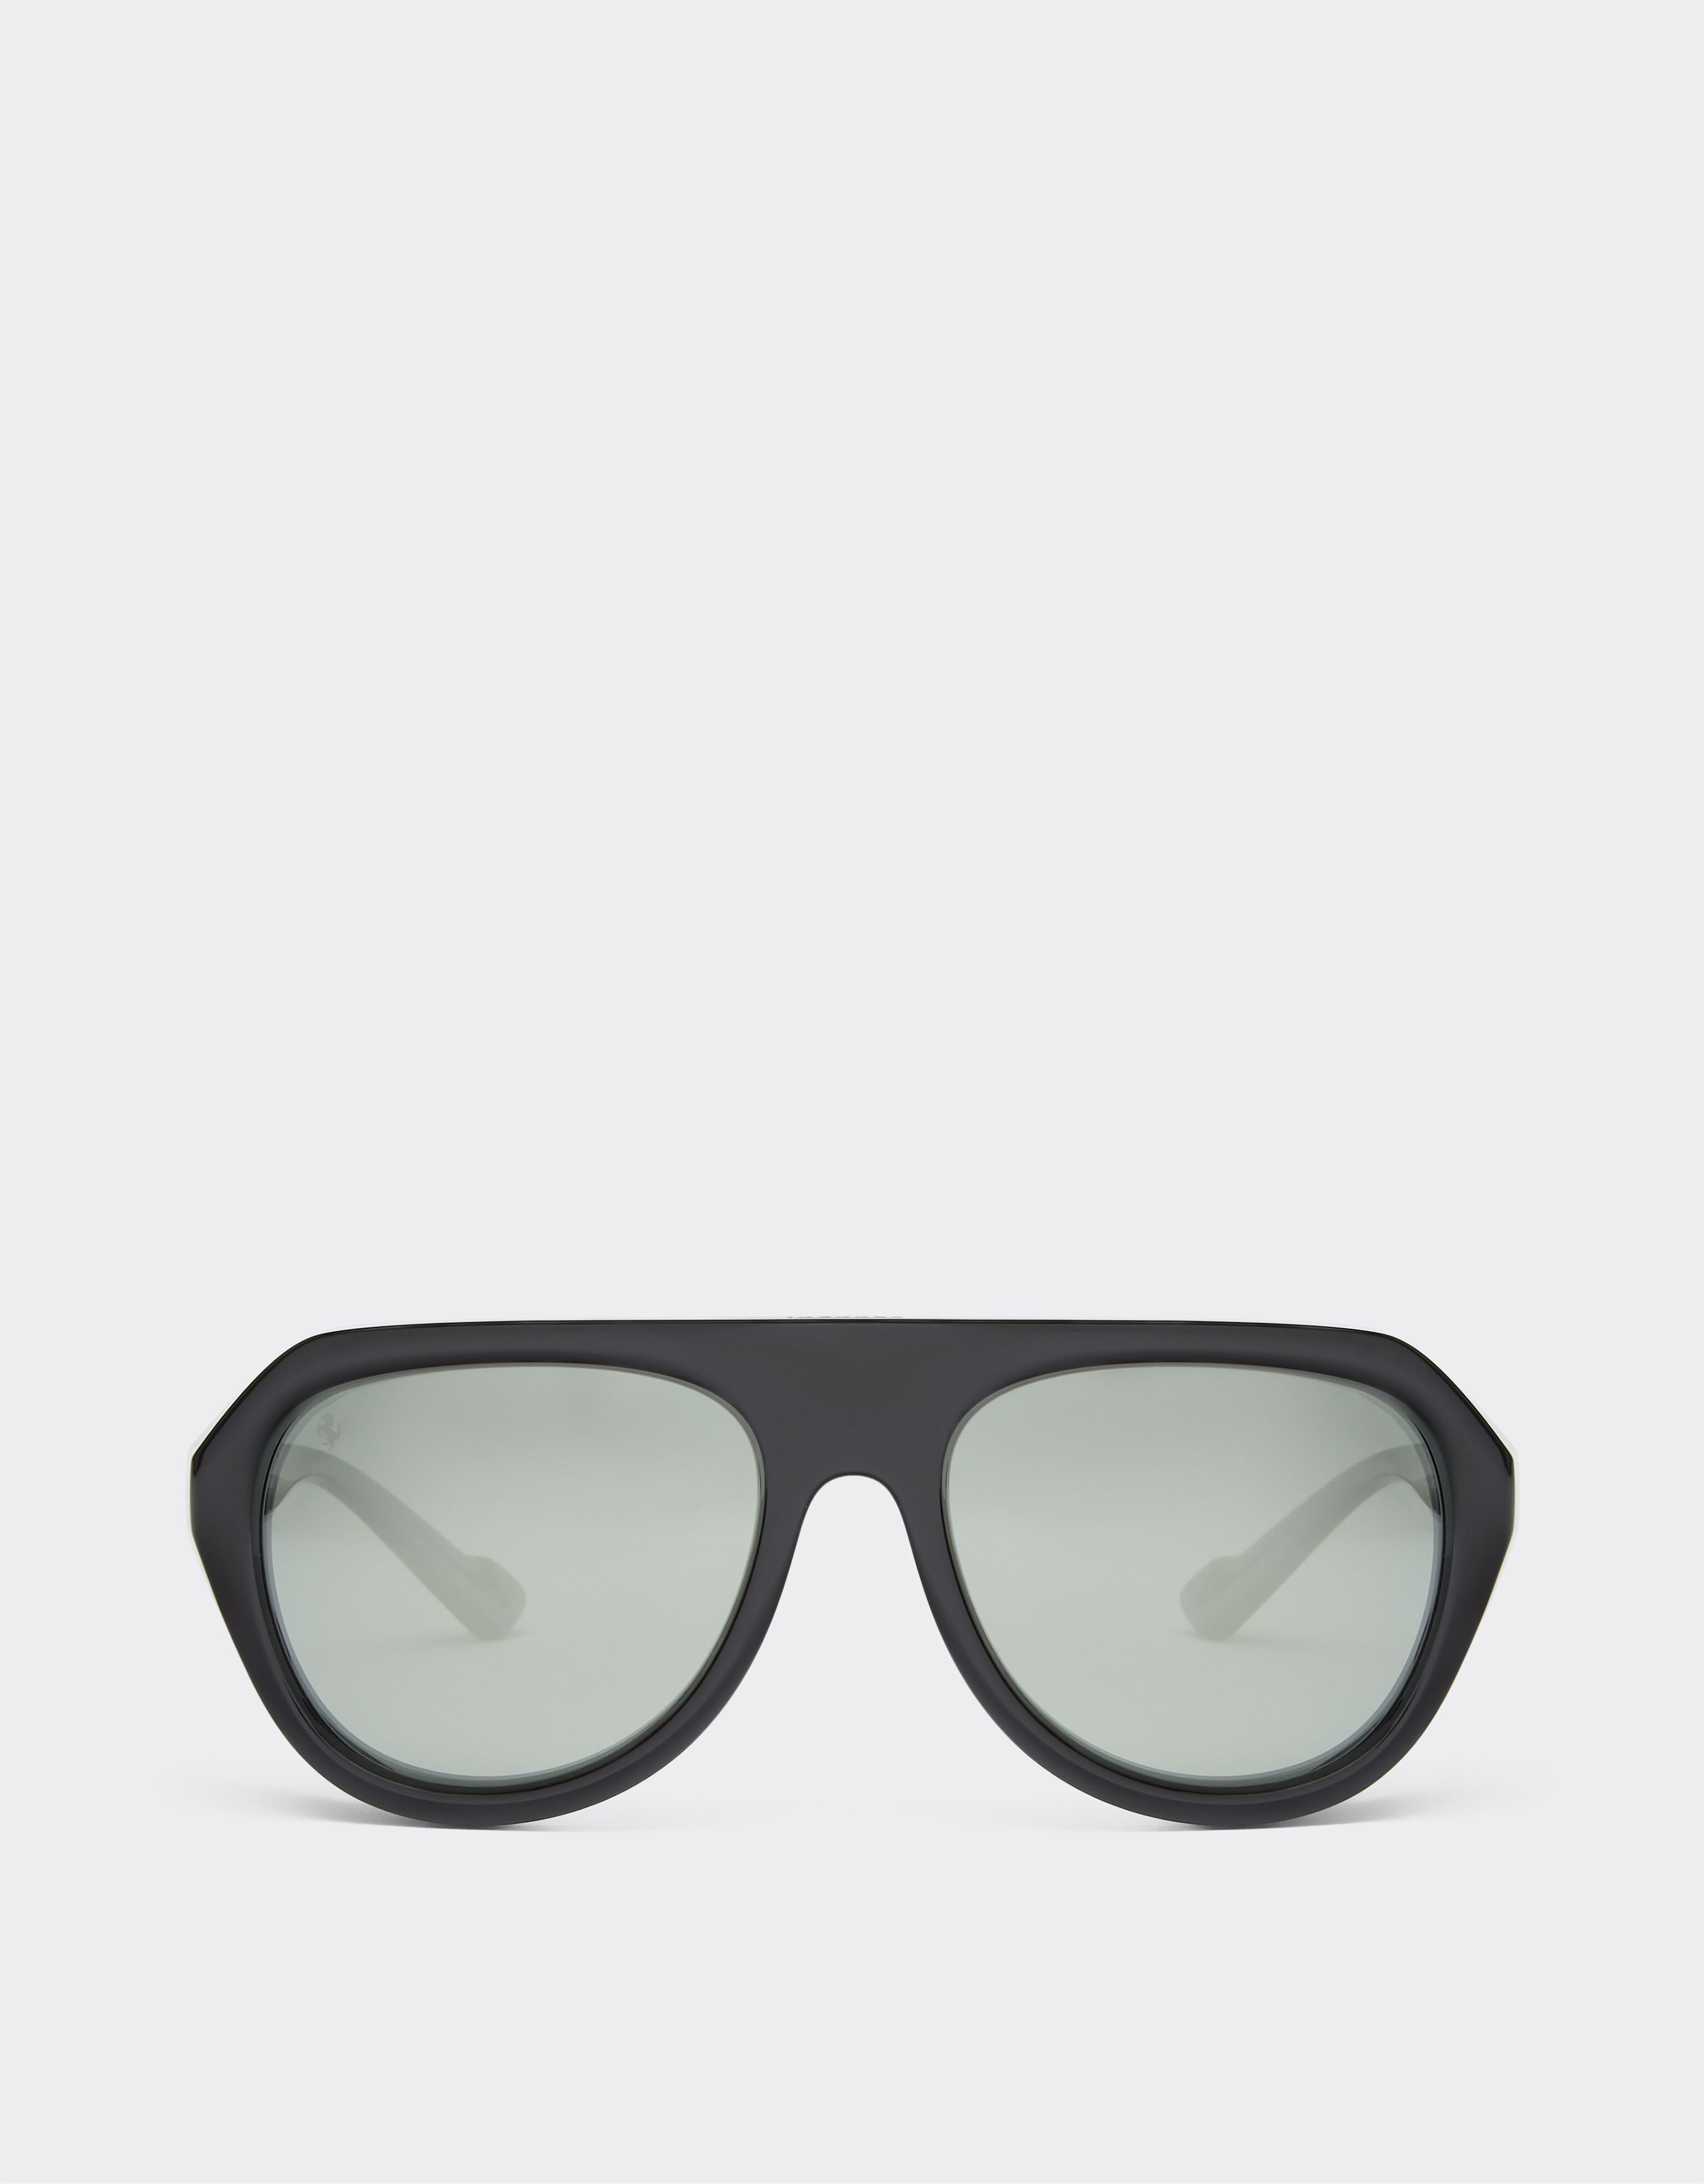 Ferrari Ferrari black sunglasses with leather details and polarised mirror lenses Black Matt F1250f